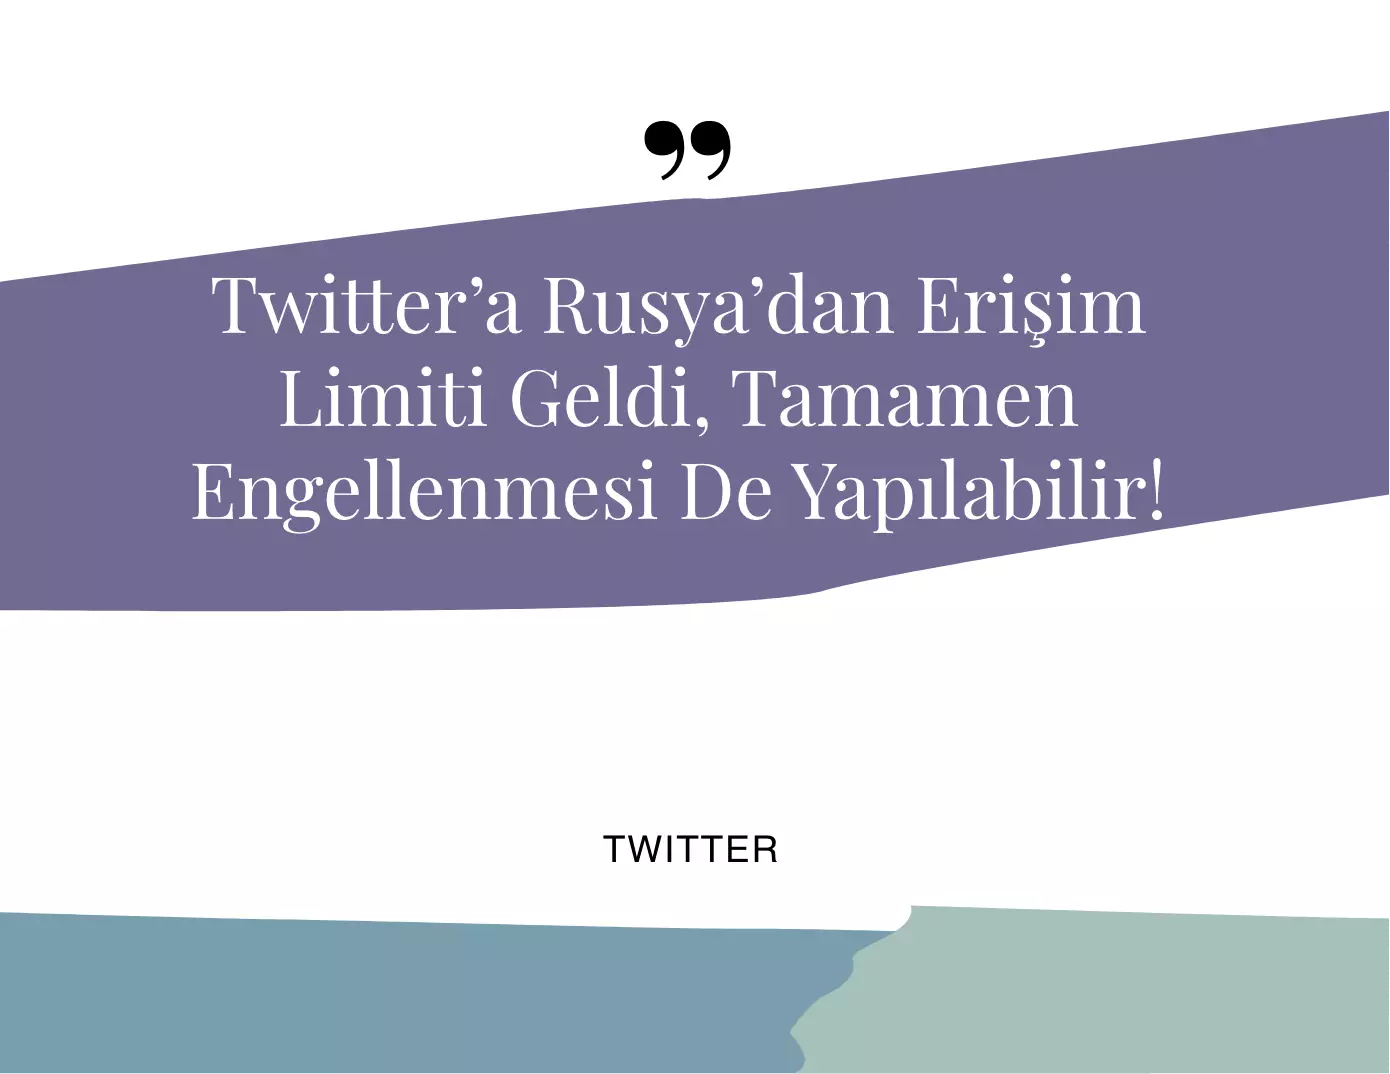 Twitter'a Rusya'dan Erişim Limiti Geldi!